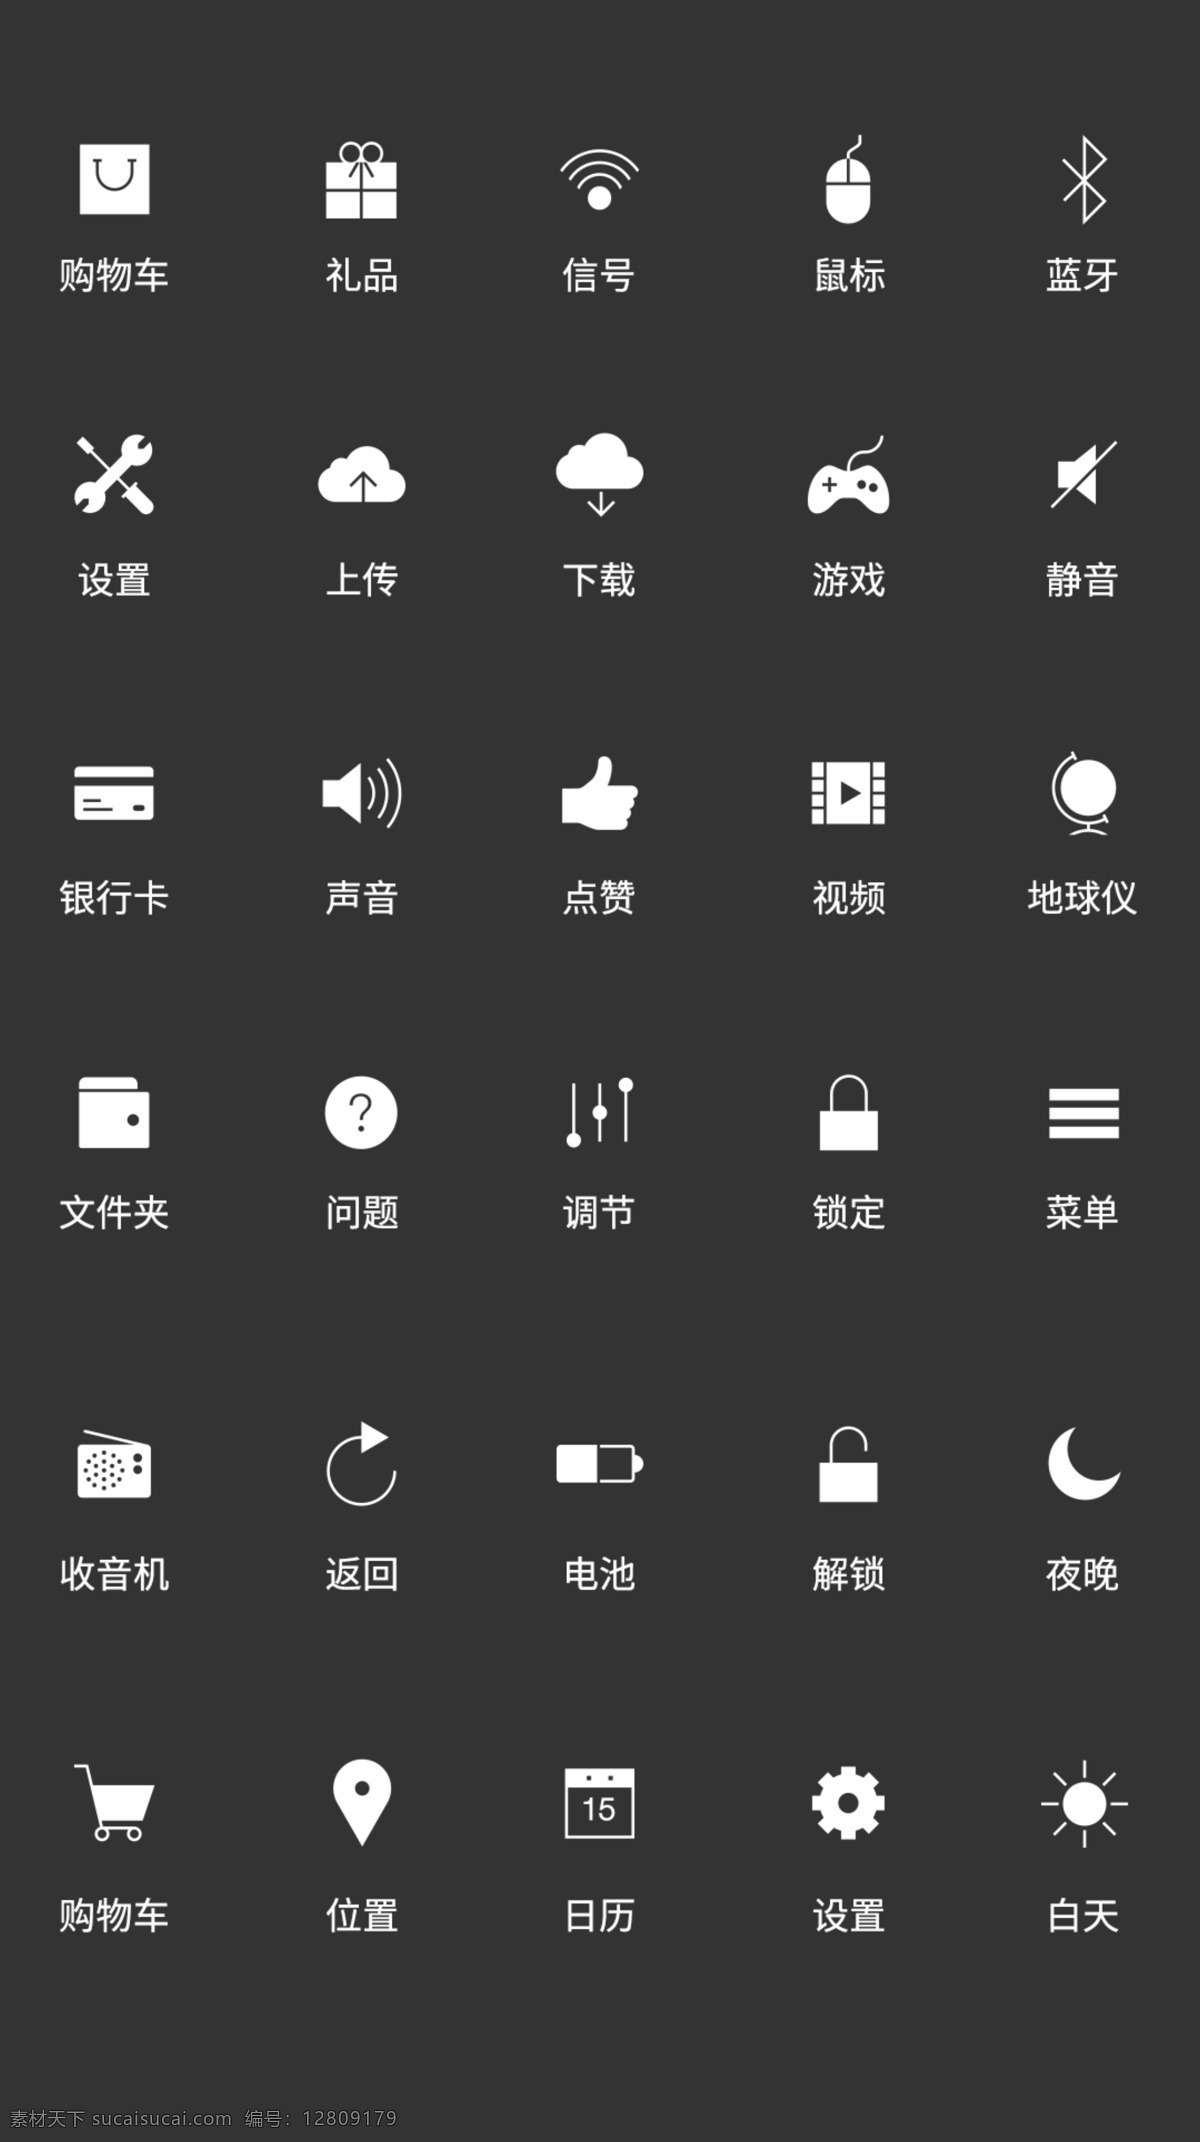 ui 手机功能 按钮 icon 图标 简约icon 时尚图标 手机icon ui设计 icon设计 手机图标 功能按钮 按键 功能图标 图标设计